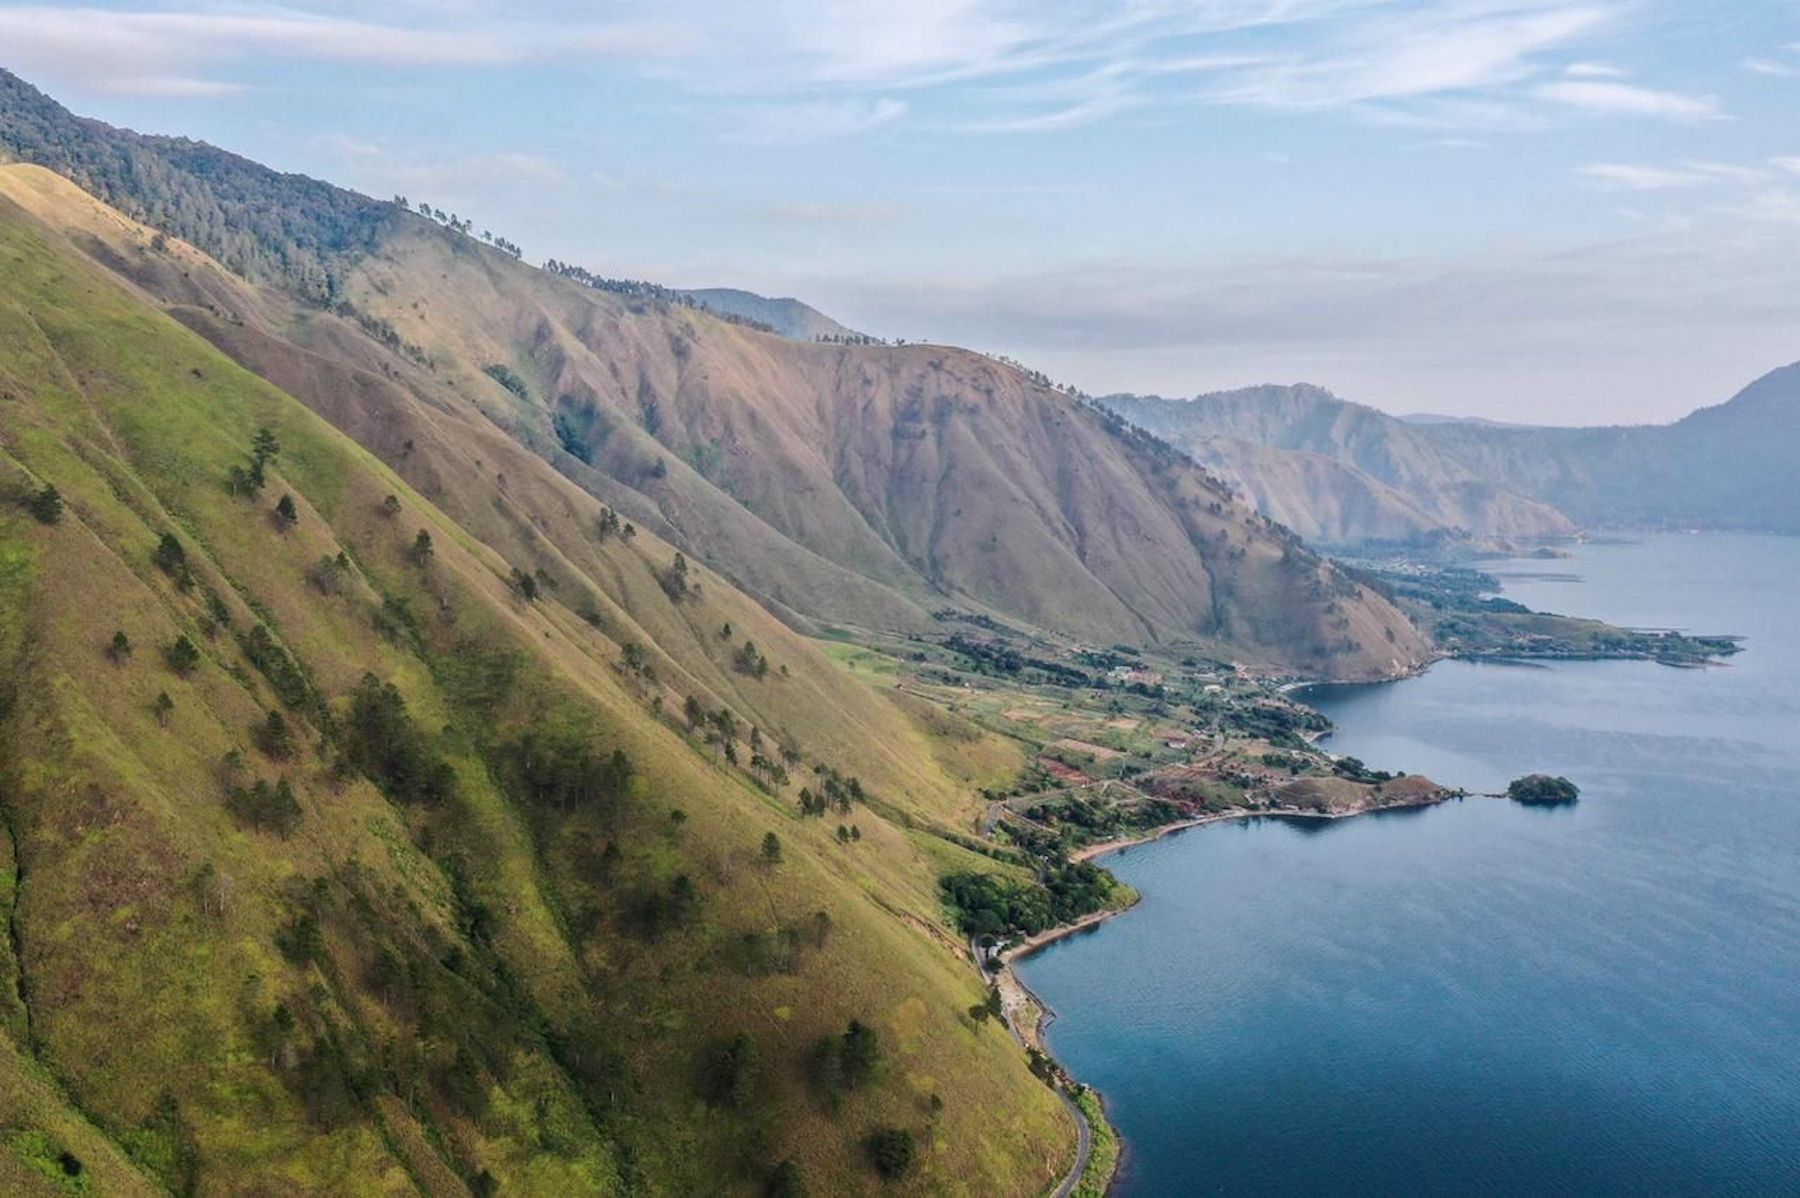 UNESCO Global Geopark kini ada 10 yang terletak di Indonesia. Salah satunya Toba.